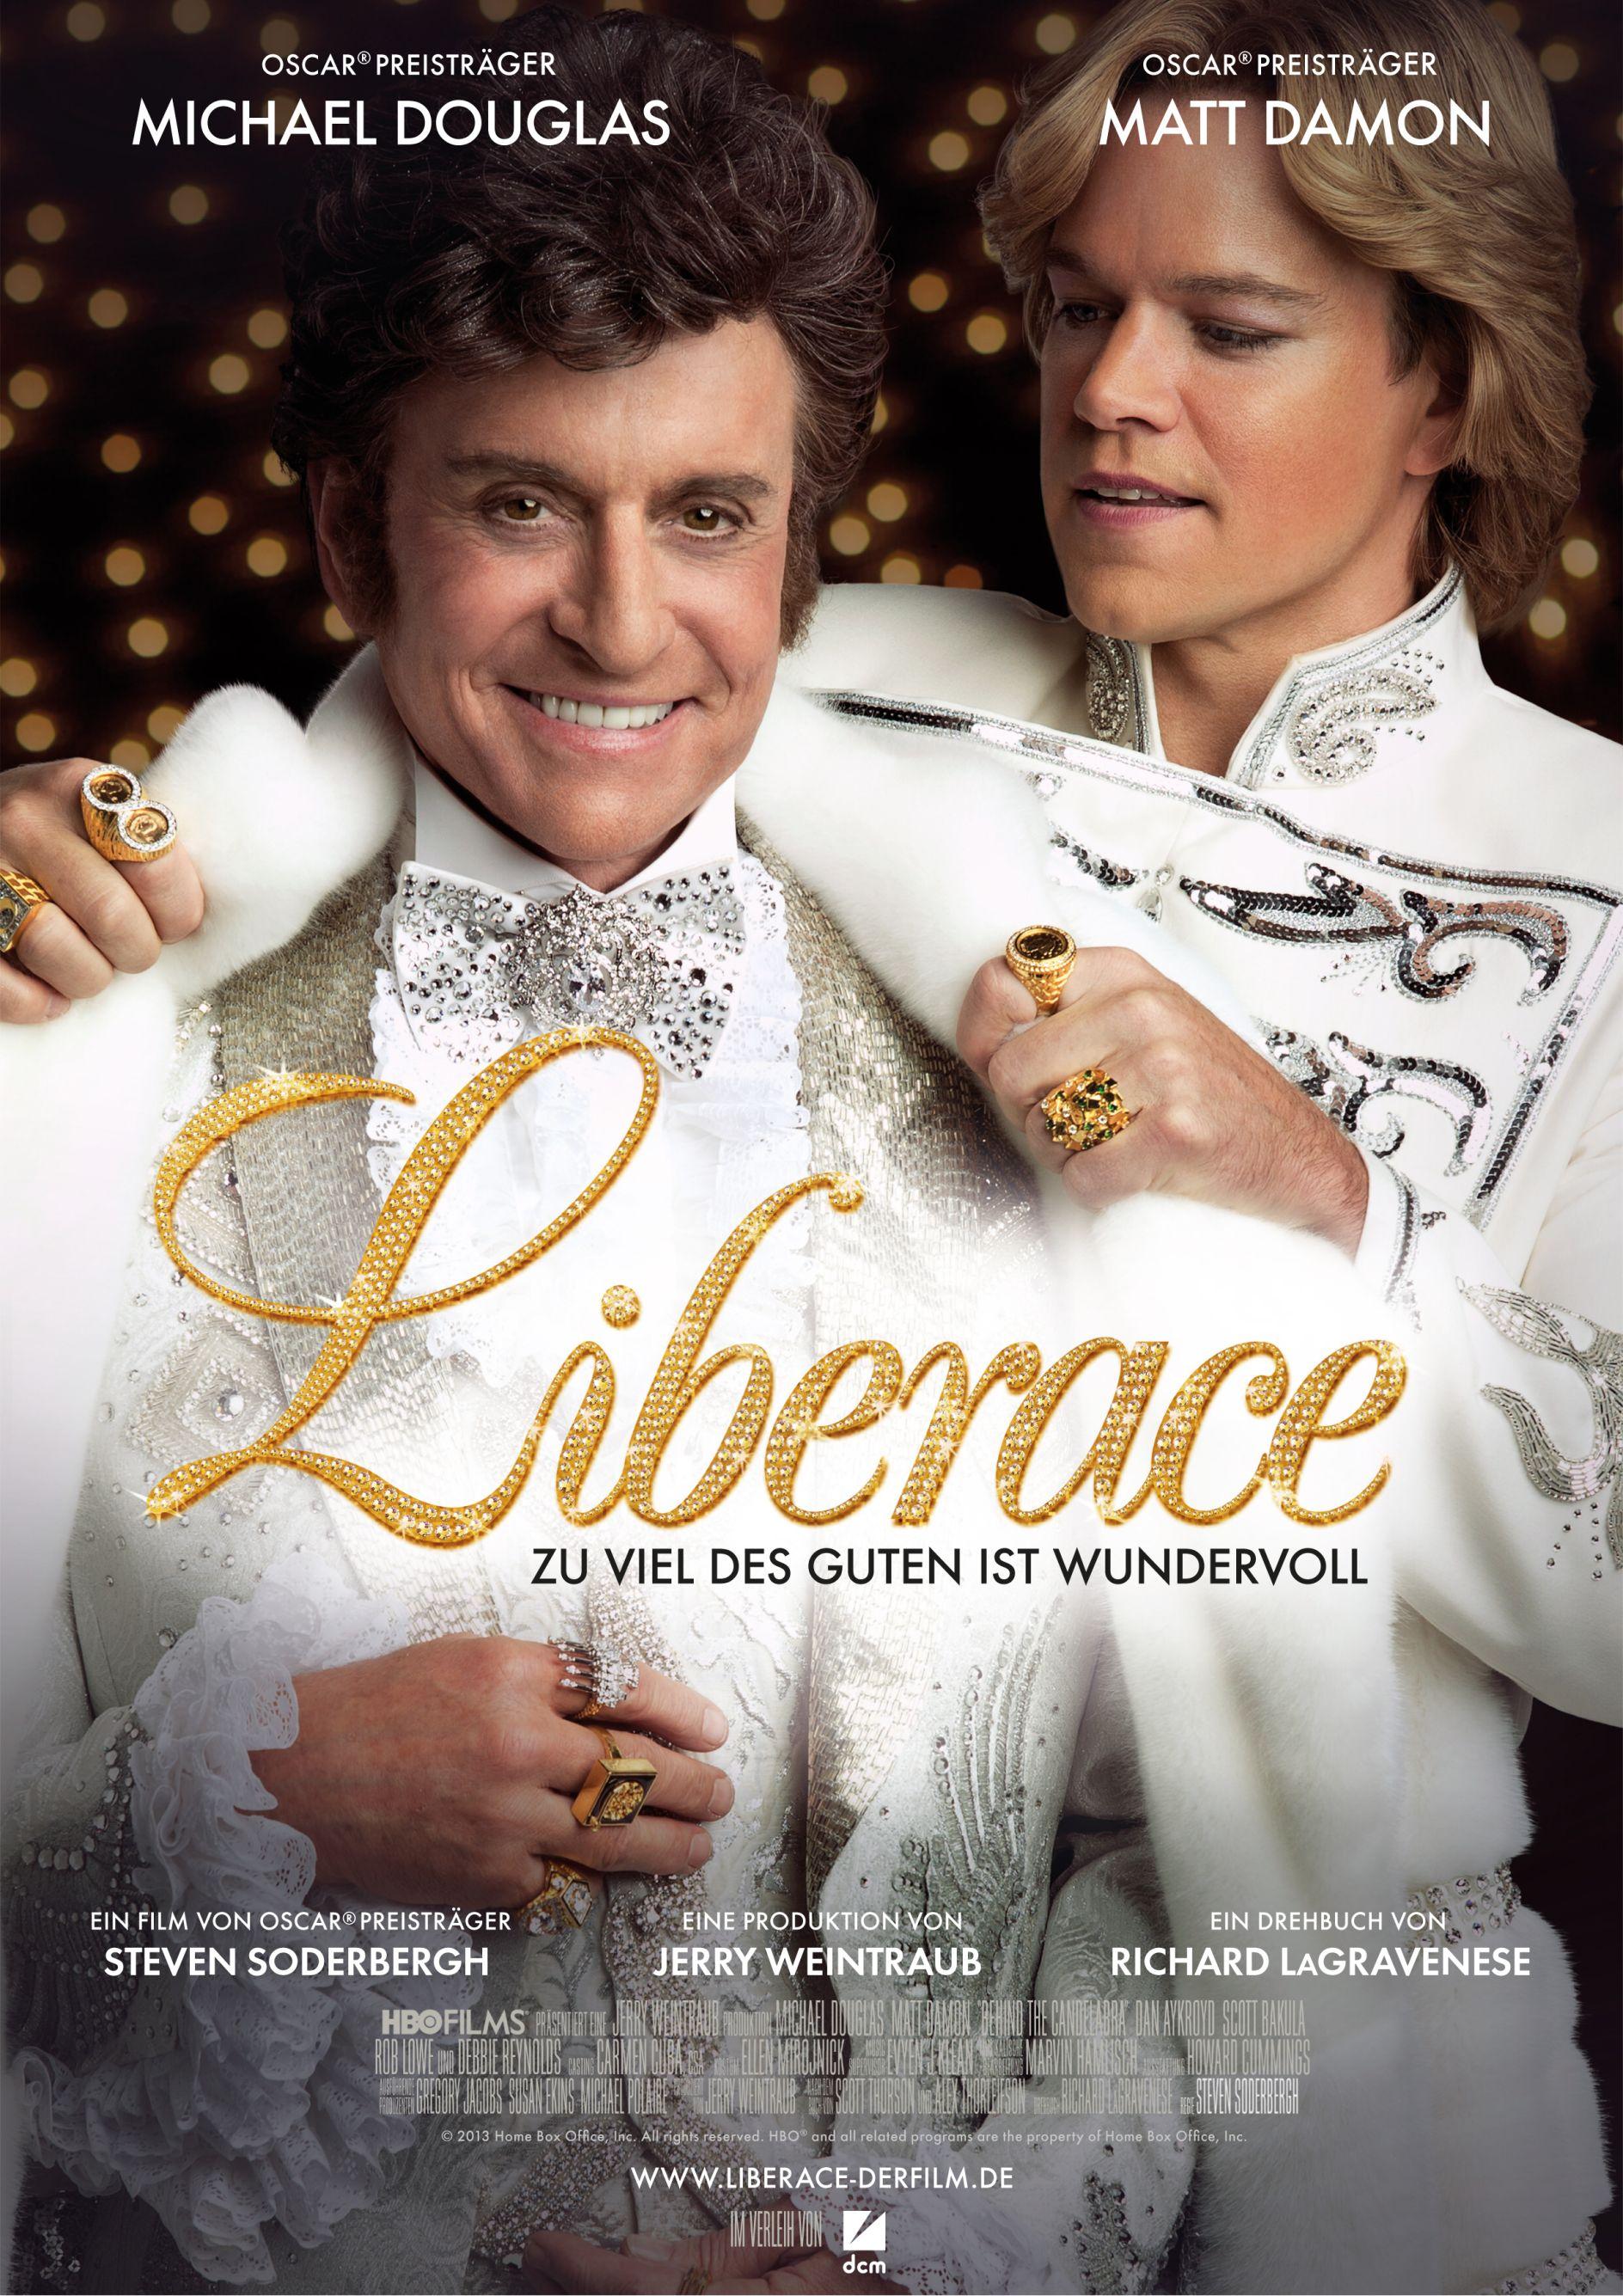 Review: LIBERACE – ZU VIEL DES GUTEN IST WUNDERVOLL – Michael Douglas und Matt Damon präferieren Poposex